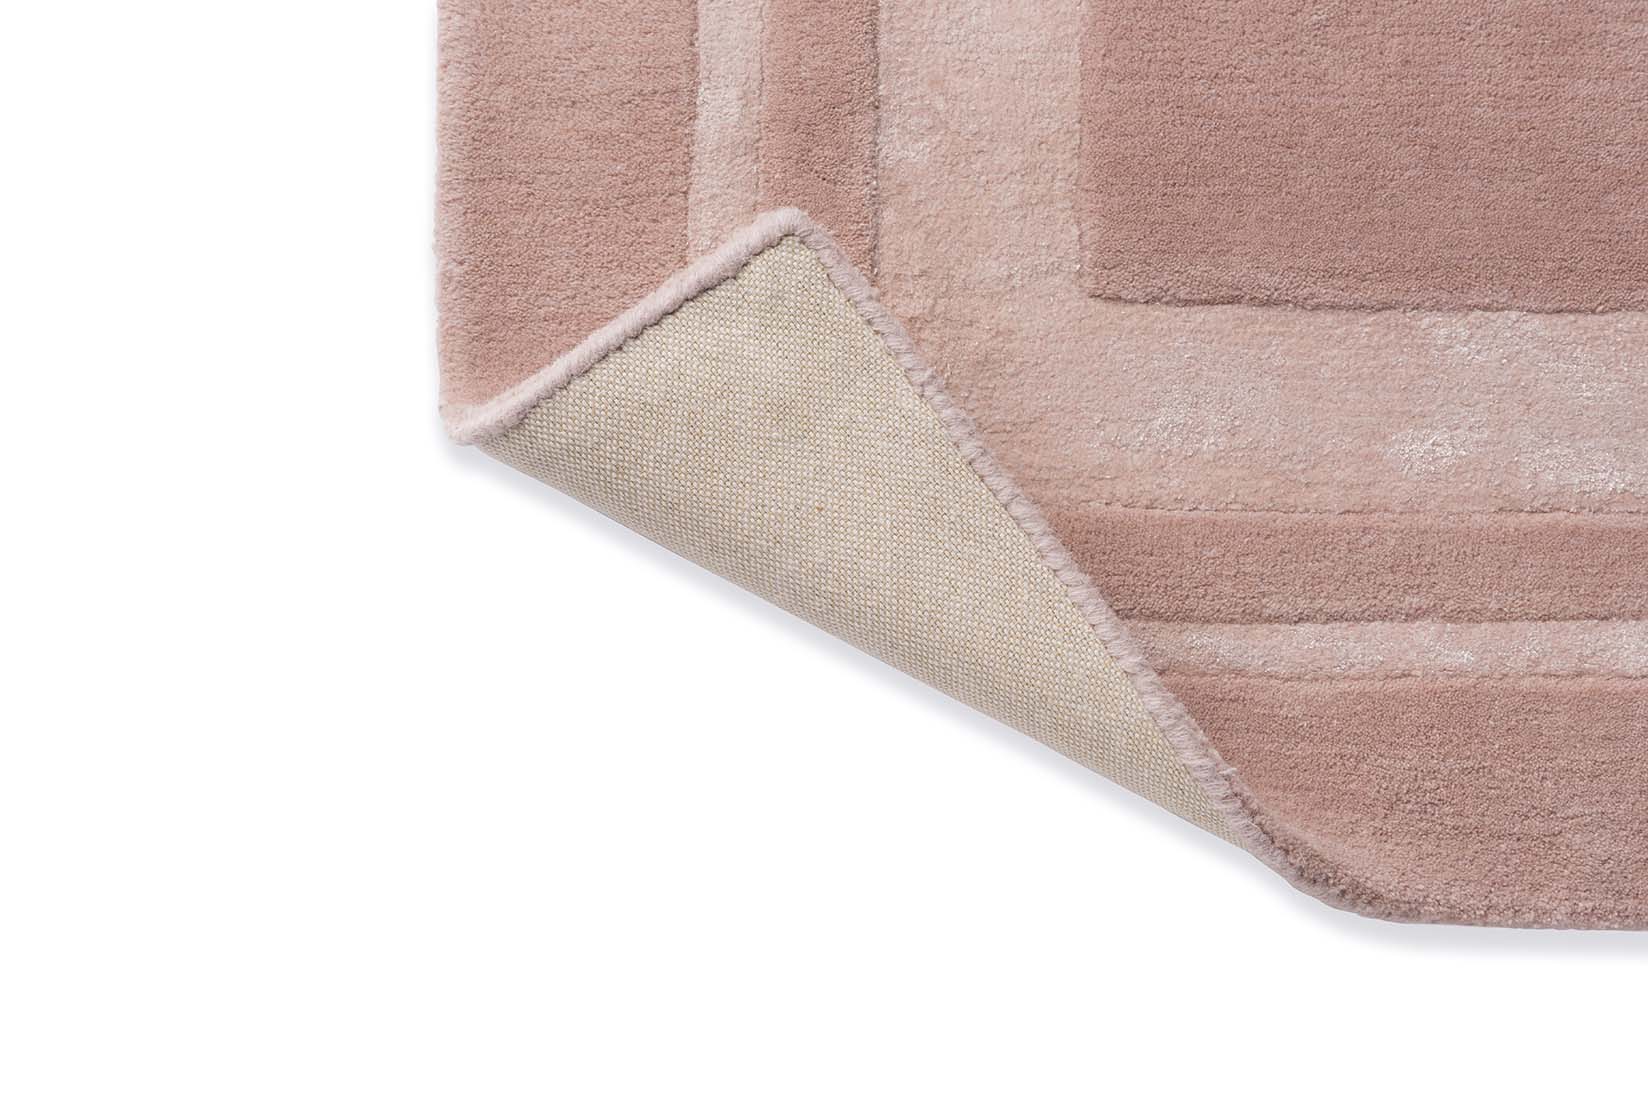 Plain pink wool and viscose rug 
